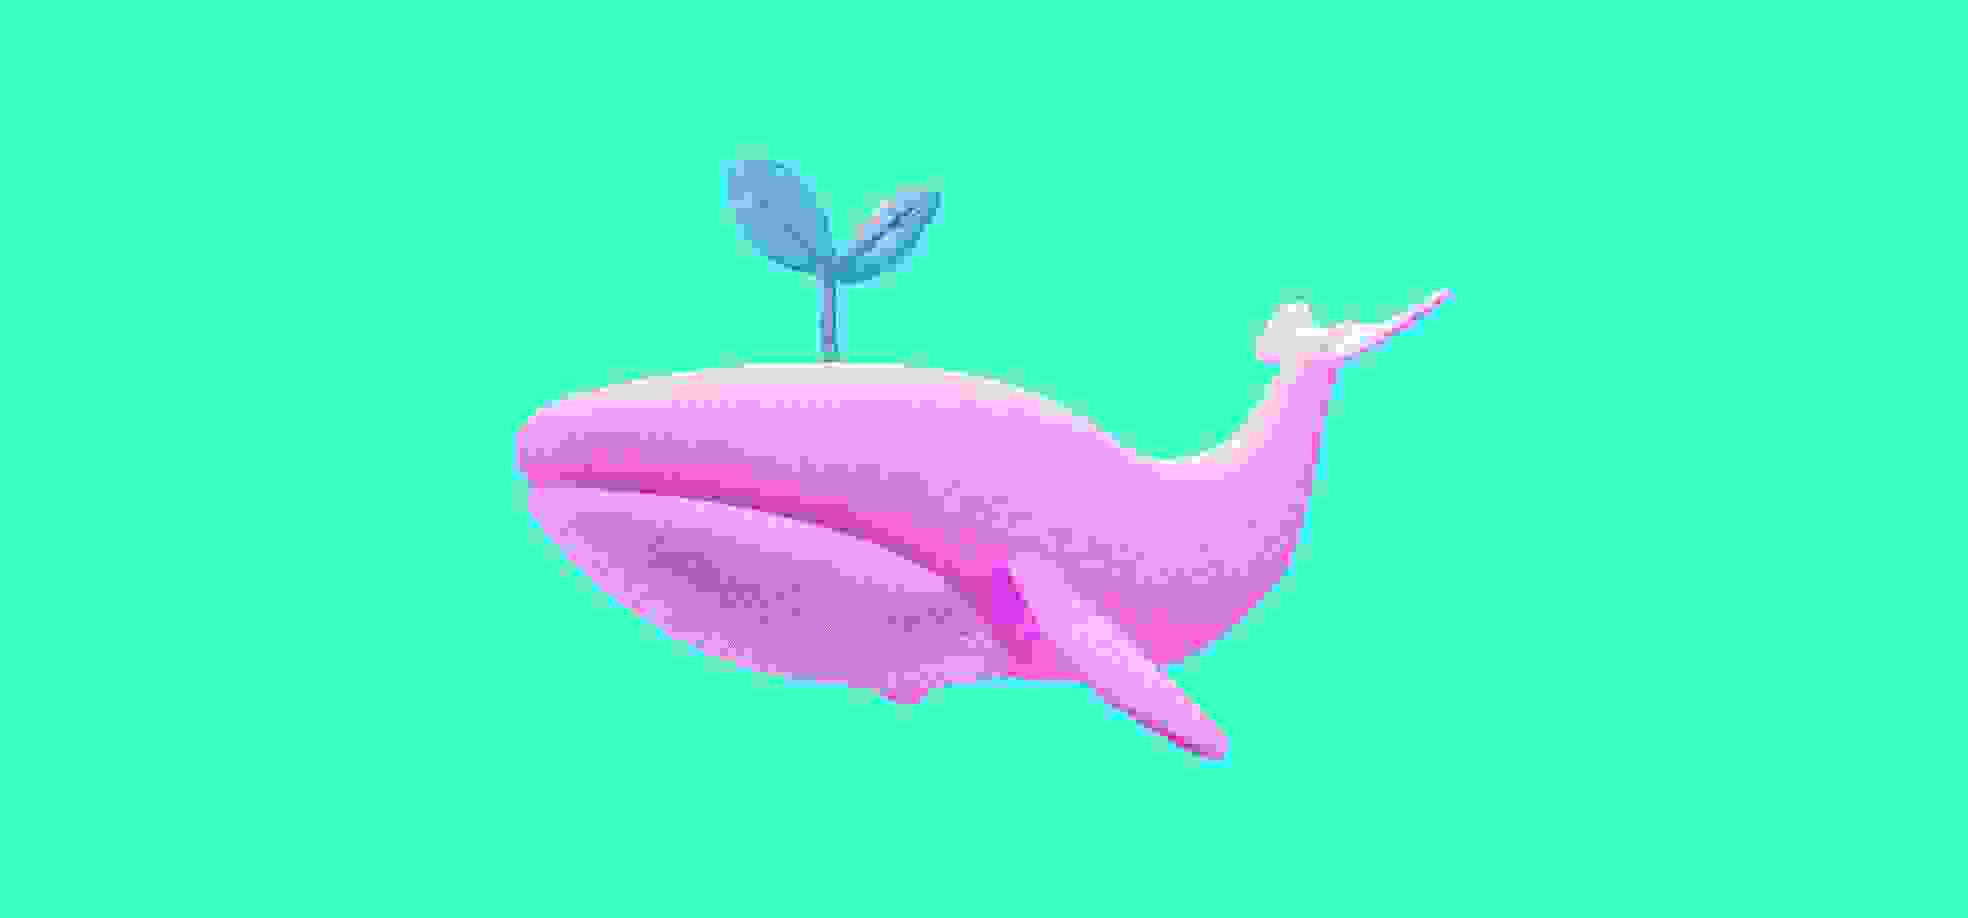 un brote que crece en una ballena